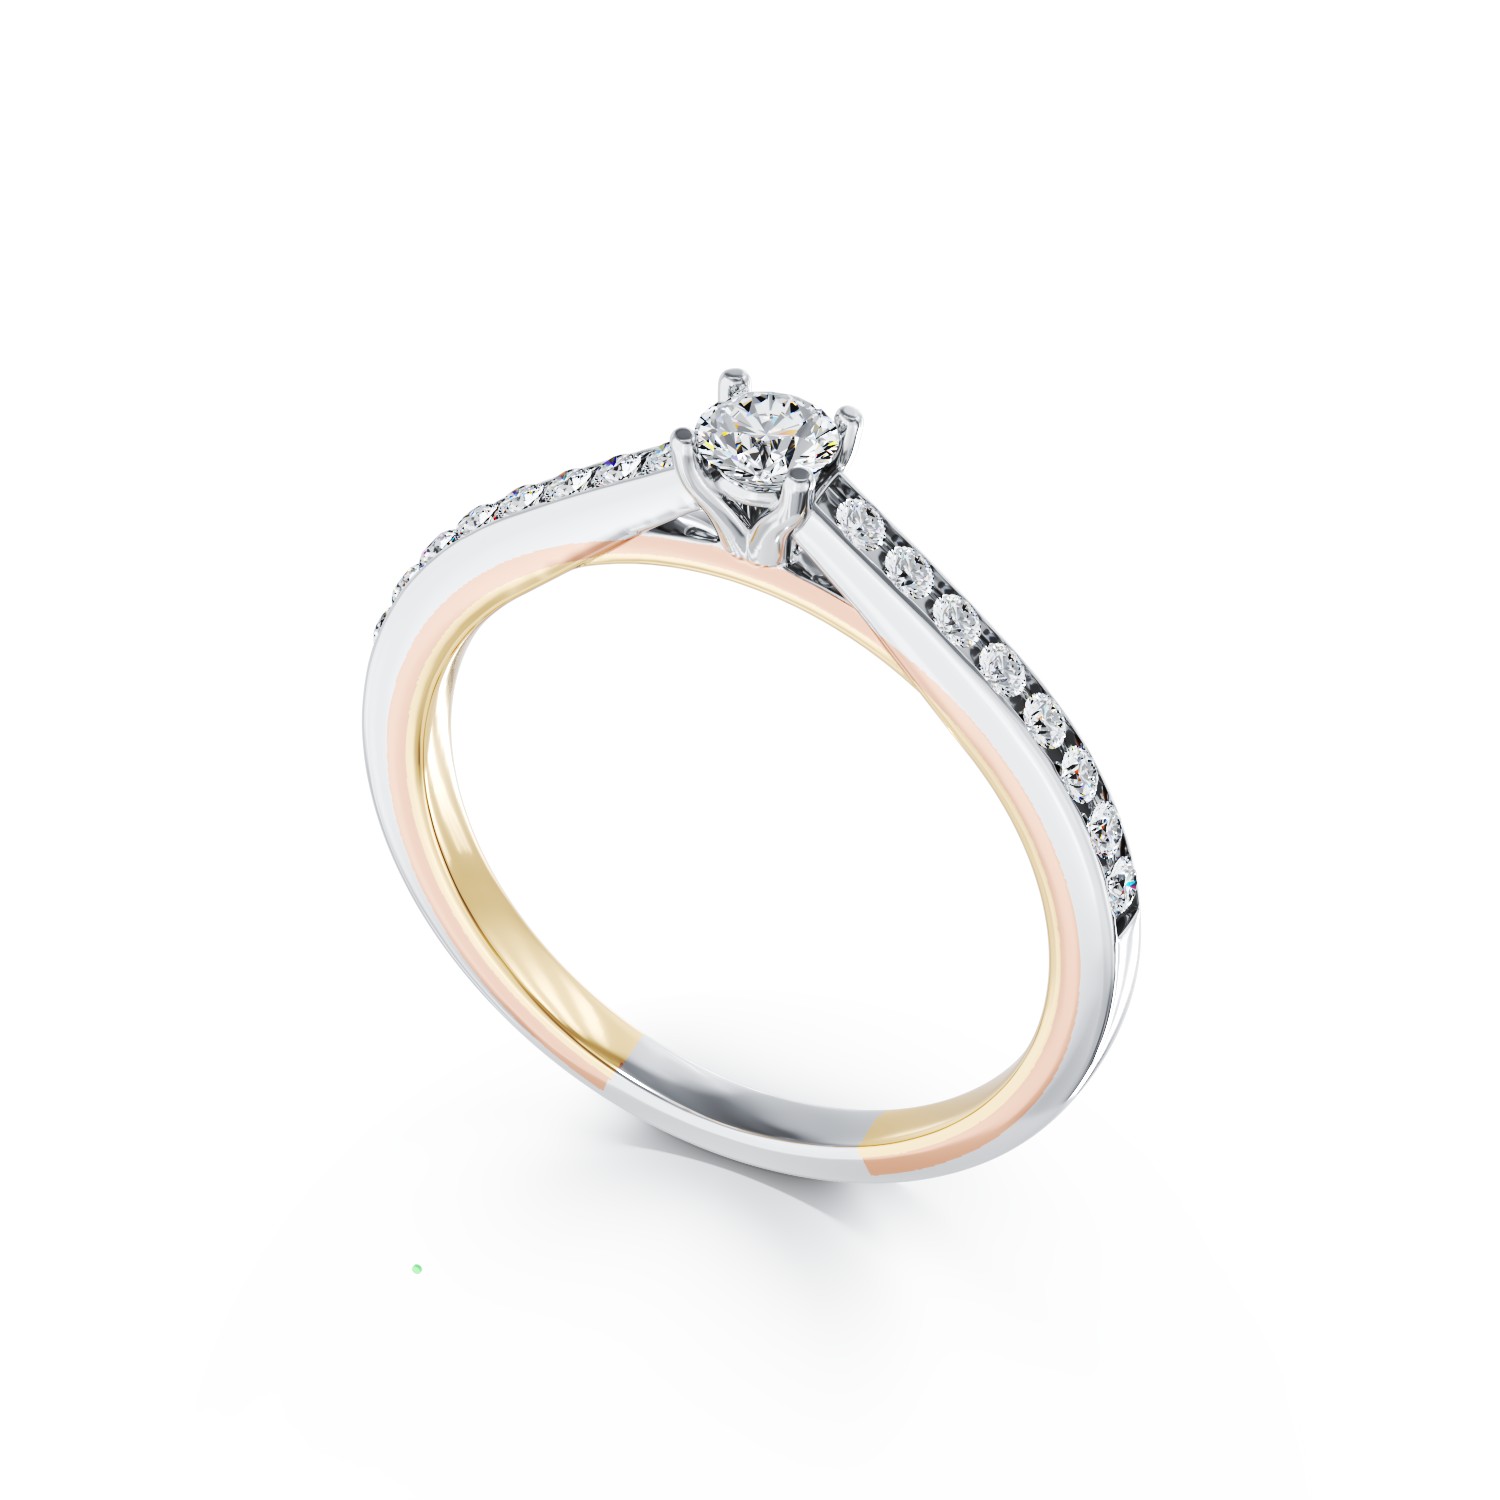 Eljegyzési gyűrű 18K-os fehér aranyból 0,15ct gyémánttal és 0,16ct gyémánttal. Gramm: 3,54